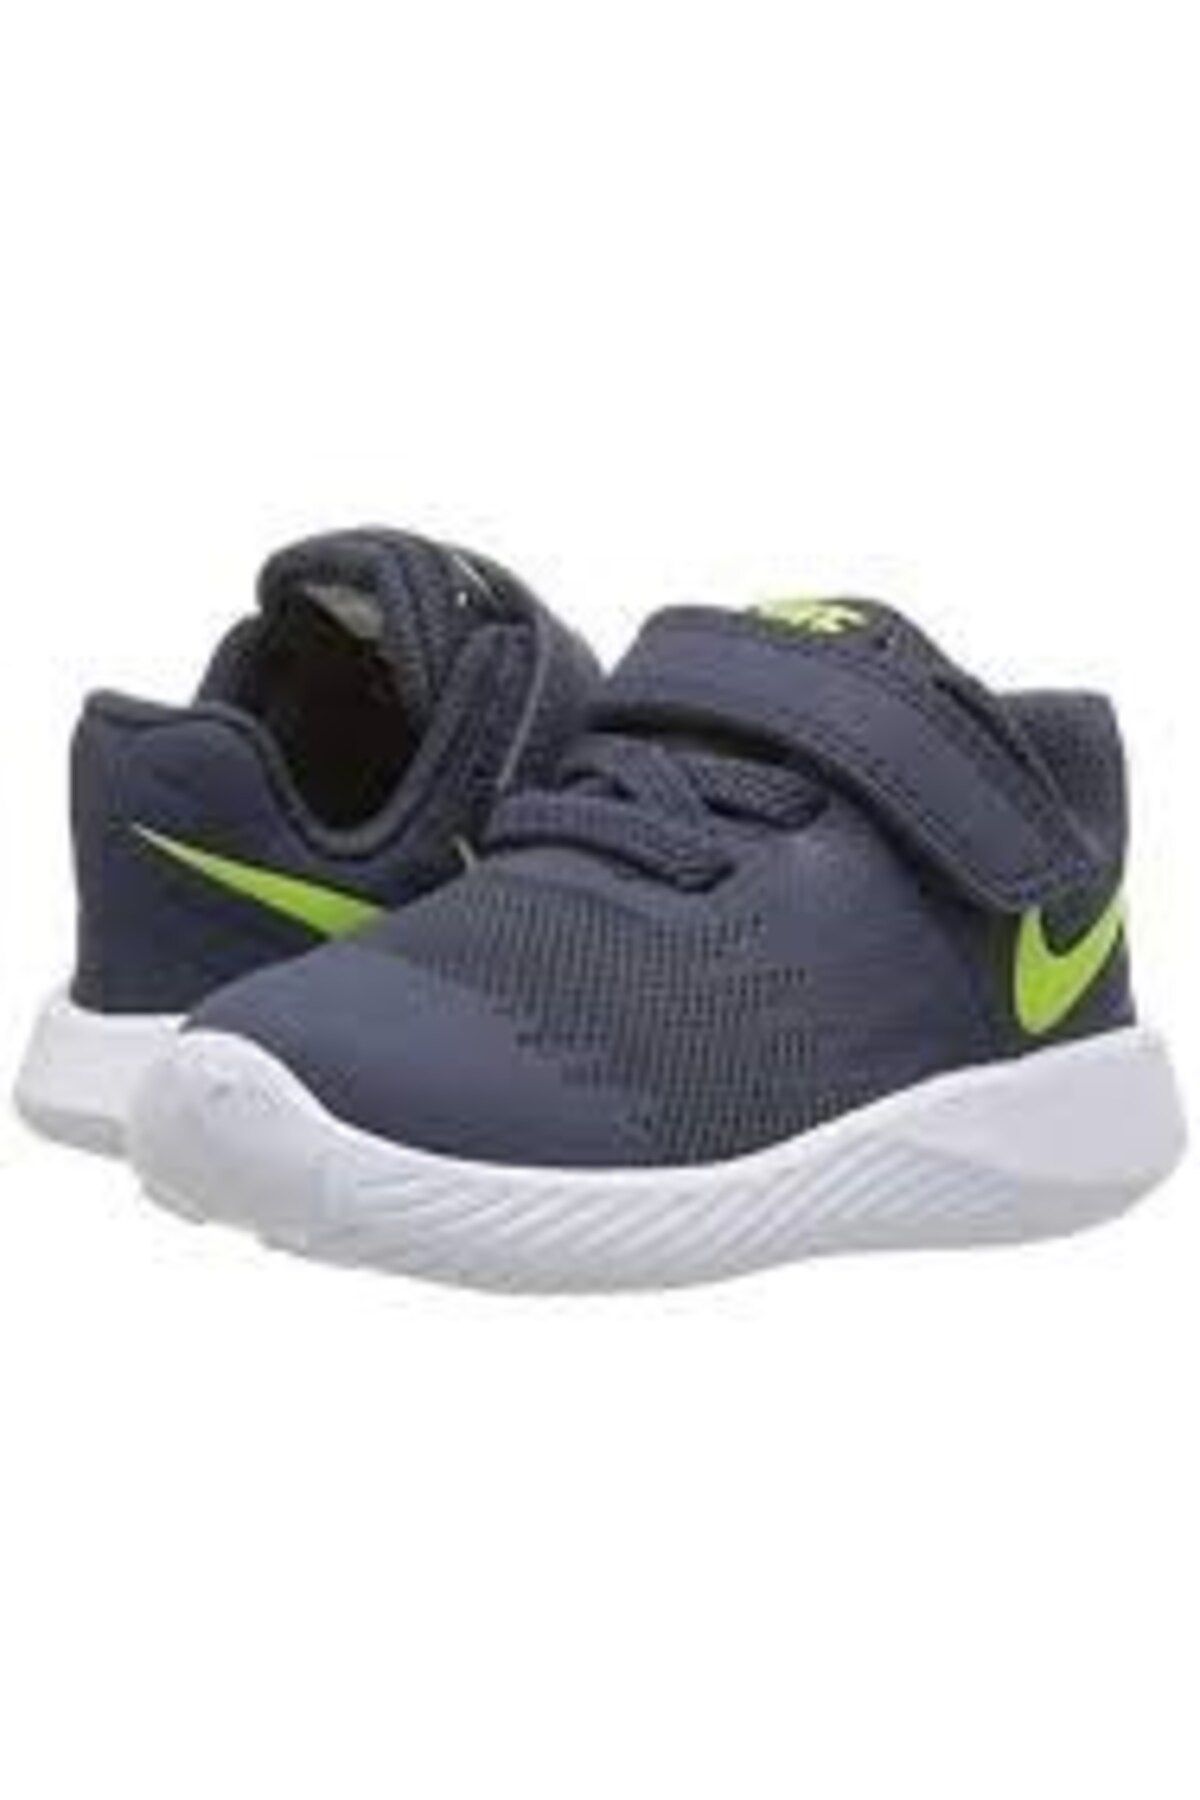 Nike NikeStar Runner (Tdv) Bebek Yürüyüş Koşu Ayakkabı 907255-404